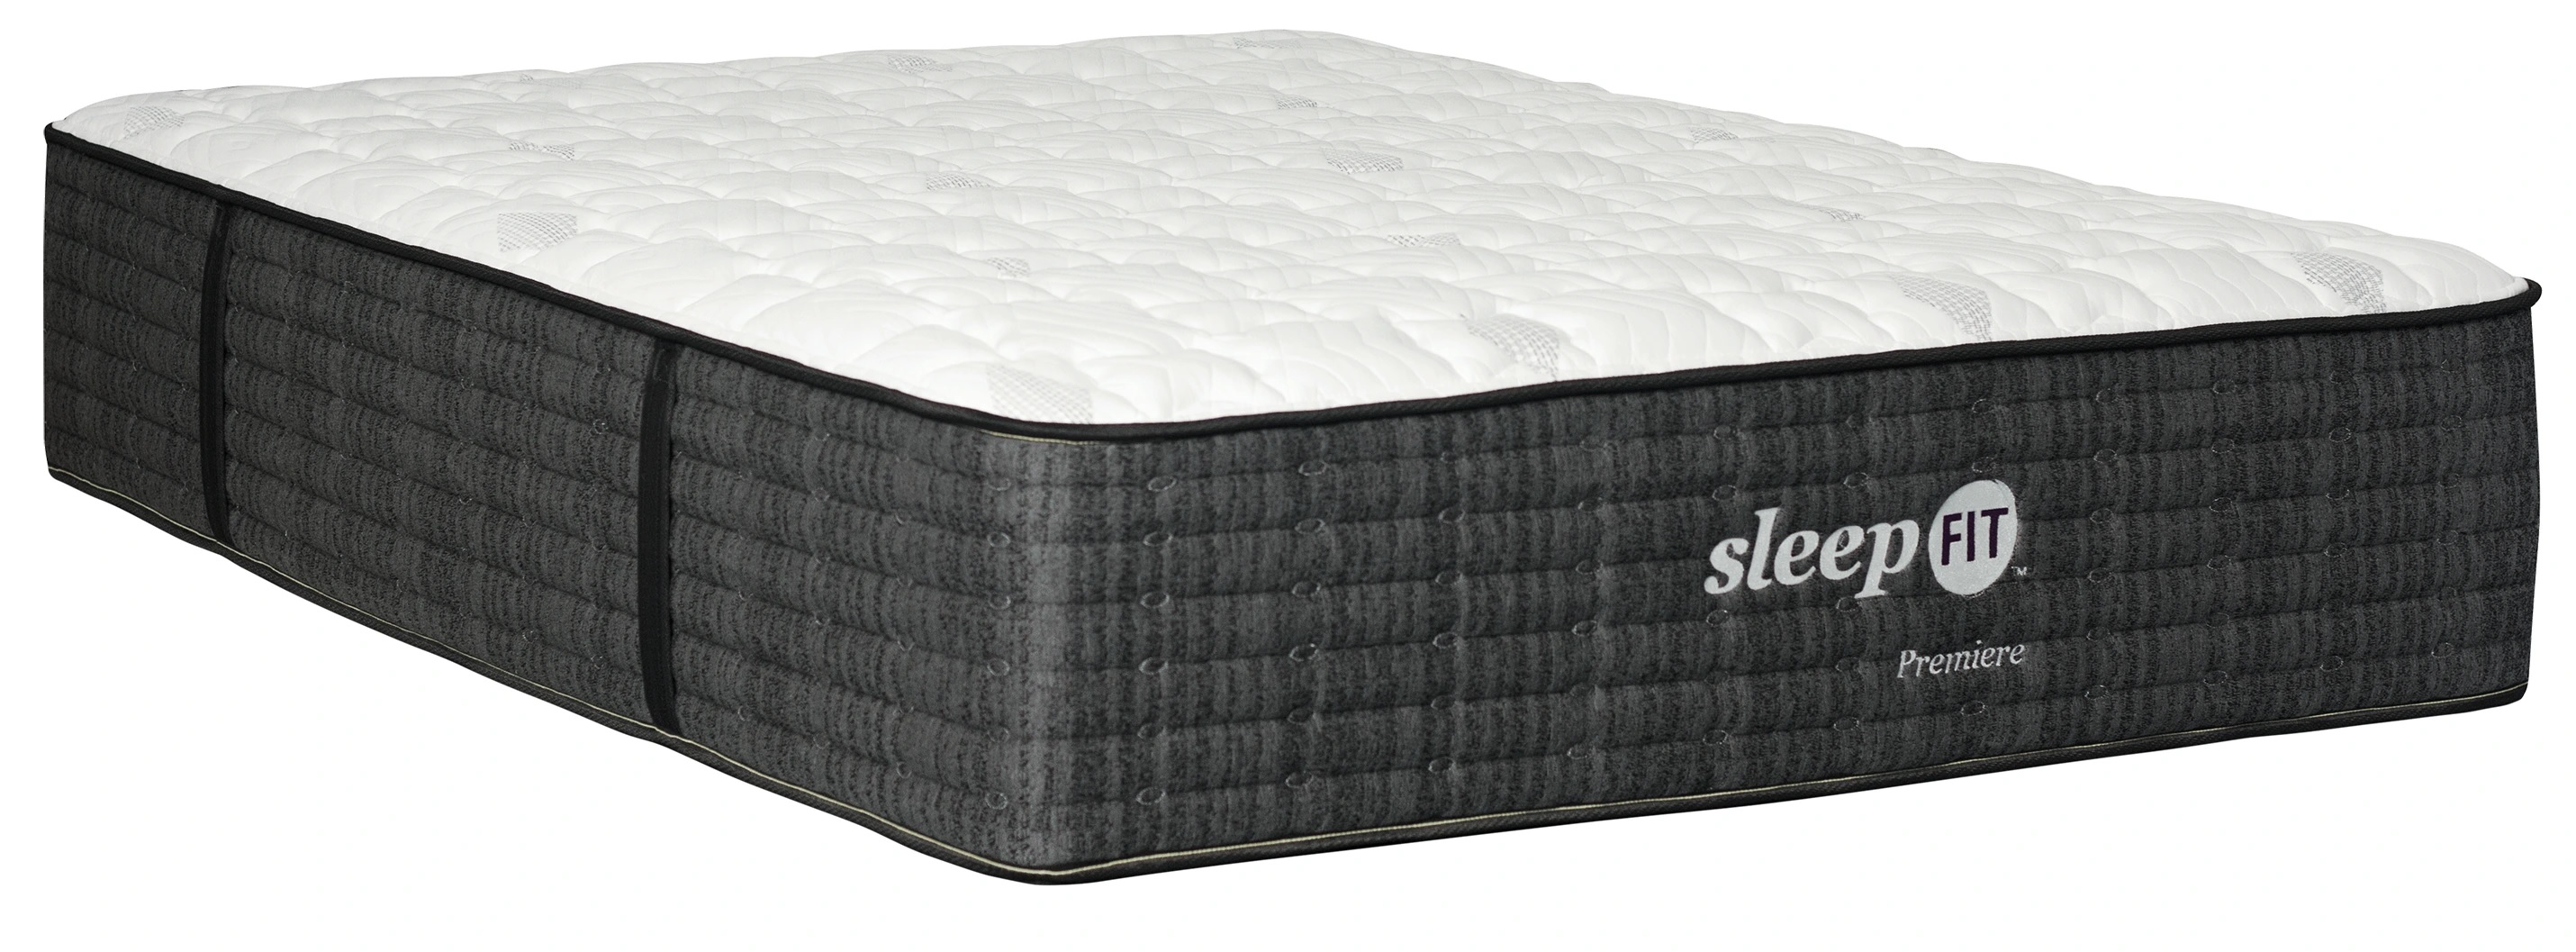 SleepFit queen mattress